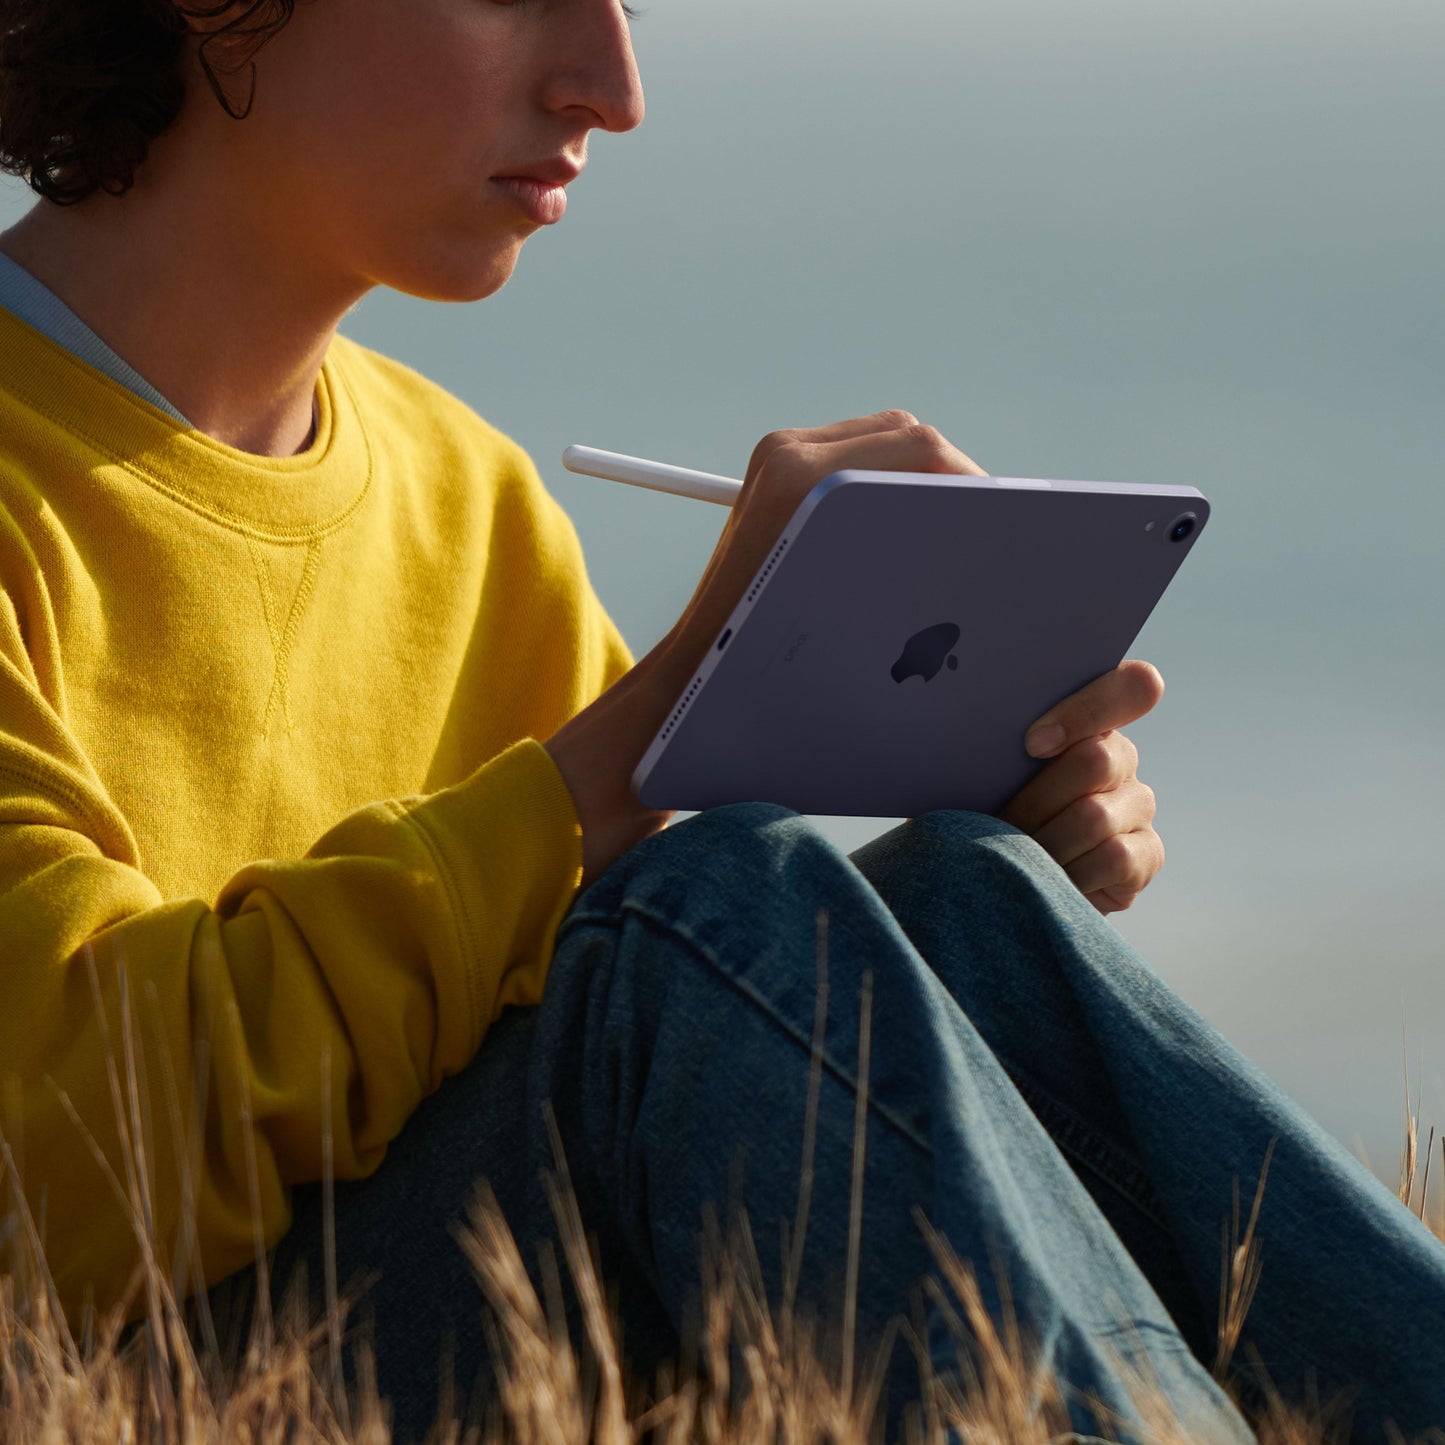 2021 iPad mini Wi-Fi 64GB - Purple (6th generation)